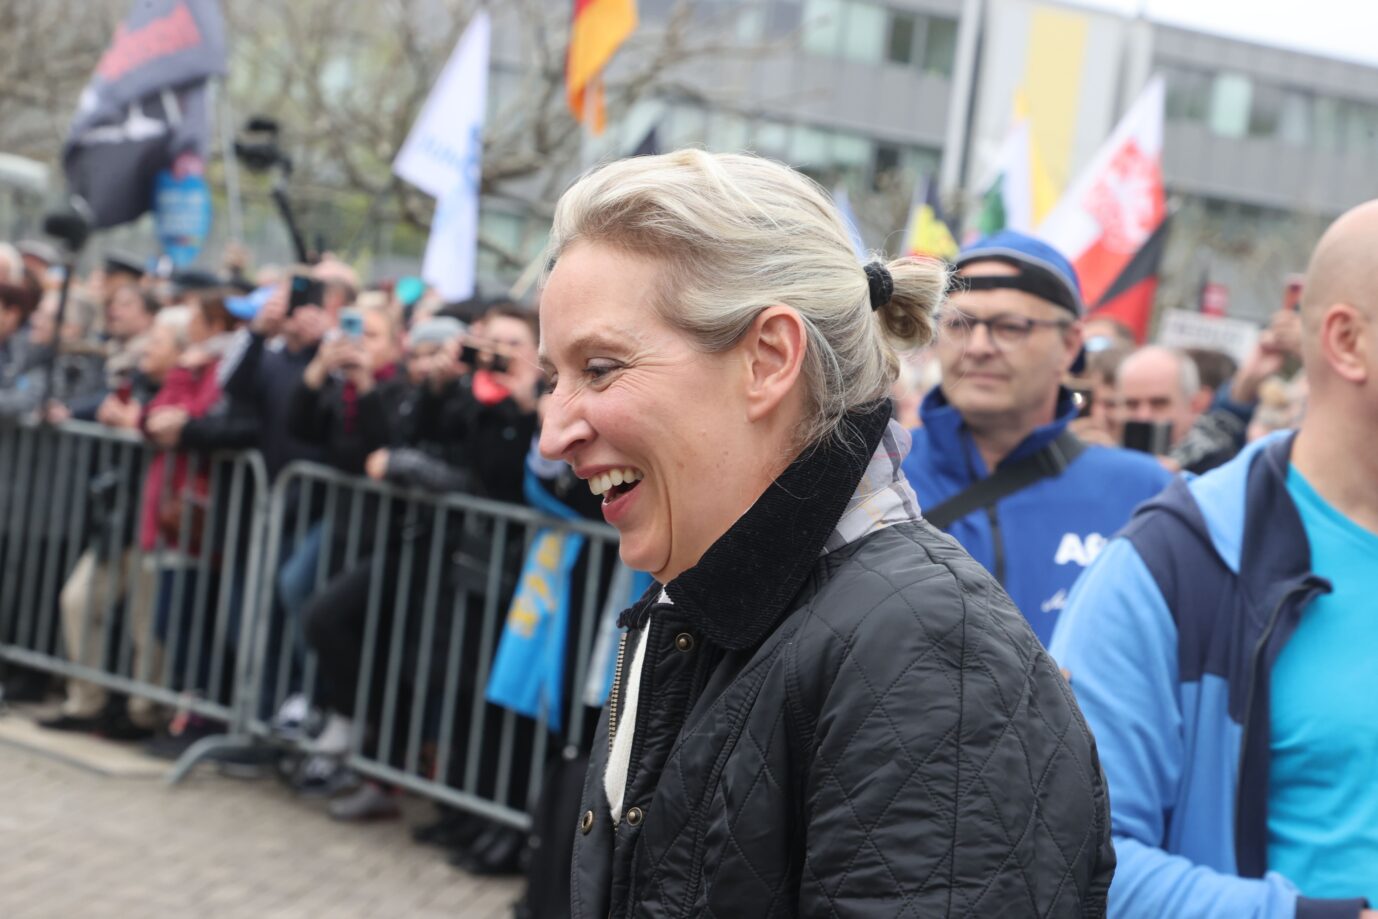 Umfragehoch und großes zusätzliches Potential: Parteichefin Alice Weidel bei der AfD-Veranstaltung „Zukunft für Deutschland“ am 29. April in Weimar.